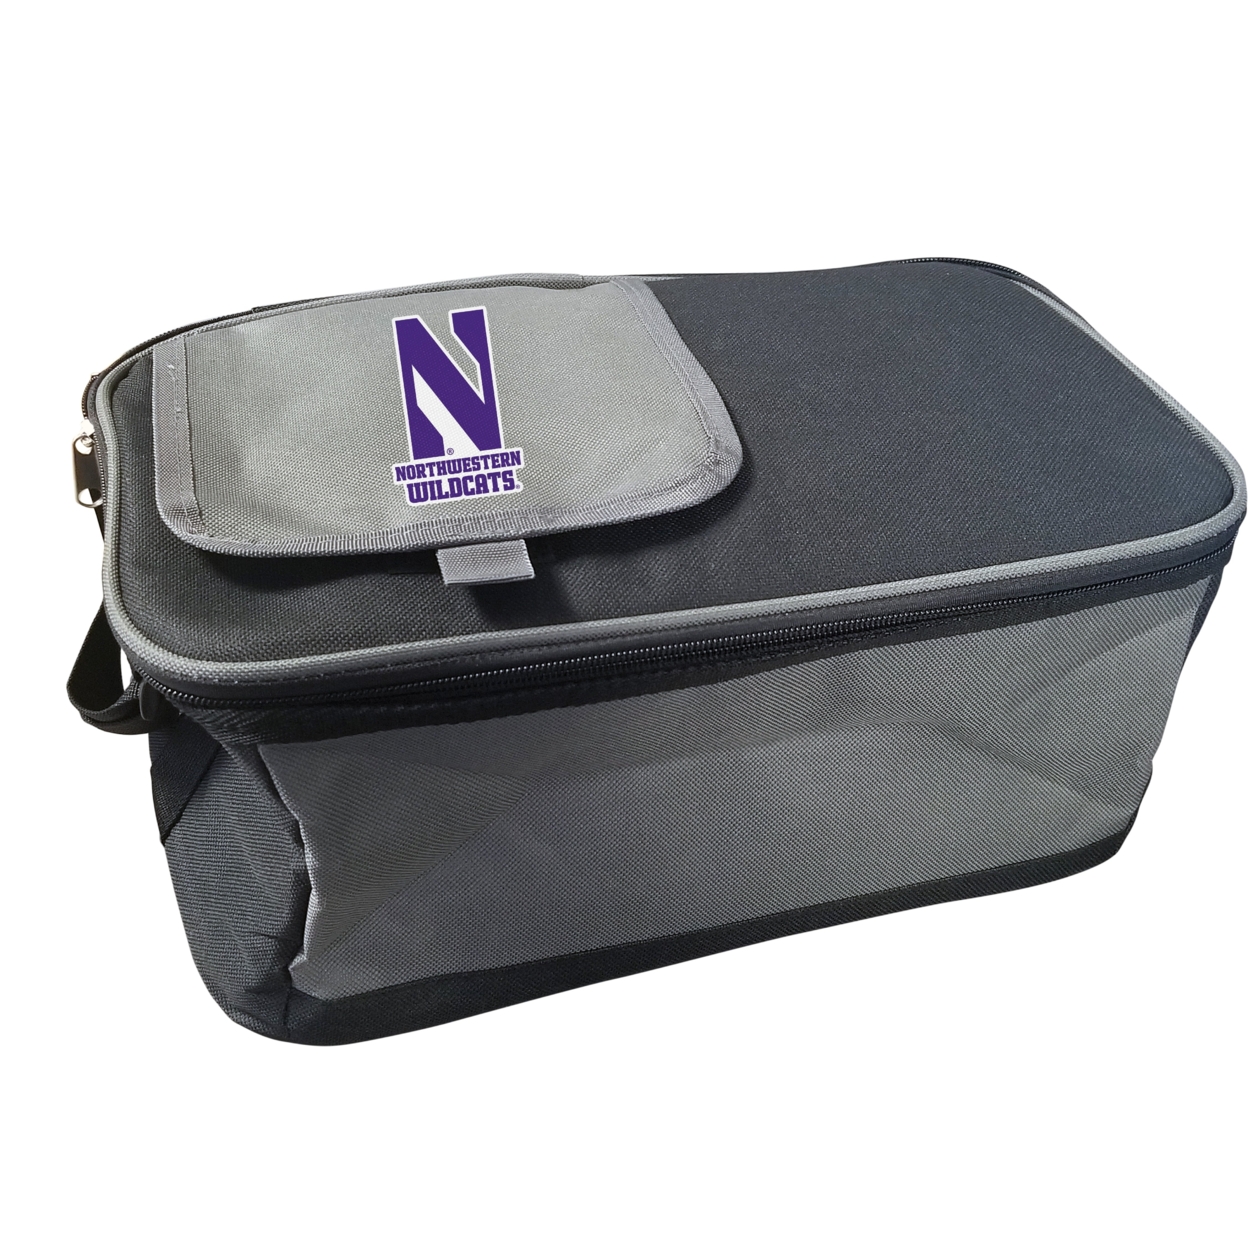 Northwestern University Wildcats 9 Pack Cooler